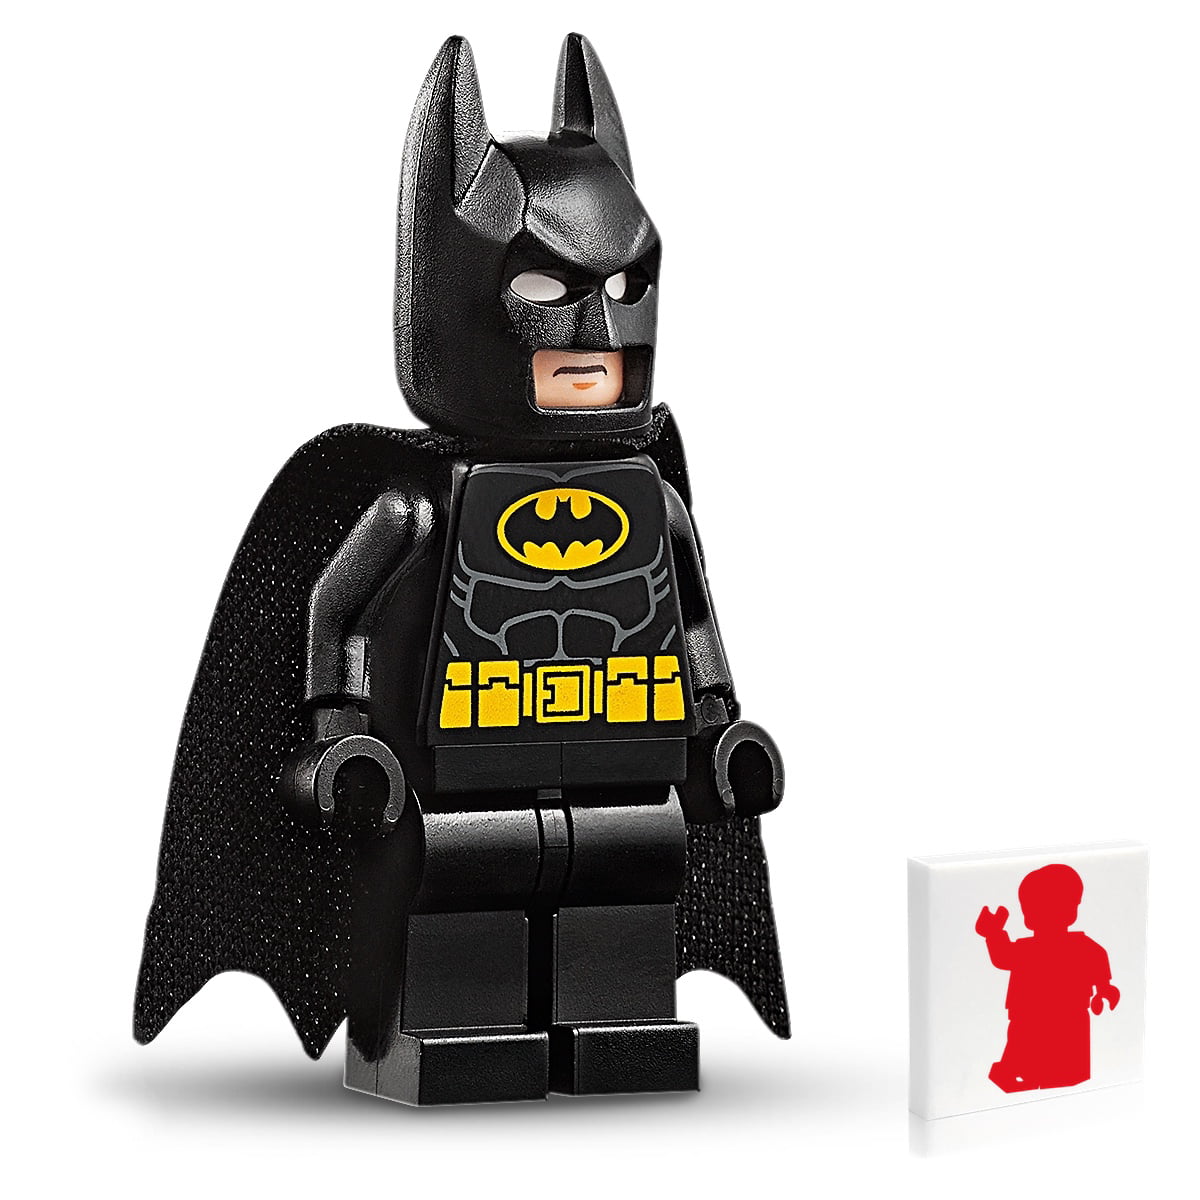 Sebski-Lego on X: Bat Ballet #lego #minifigures #batman #legobatman #ballet  #batballet #legobatmanmovie For more of my Lego photos:    / X